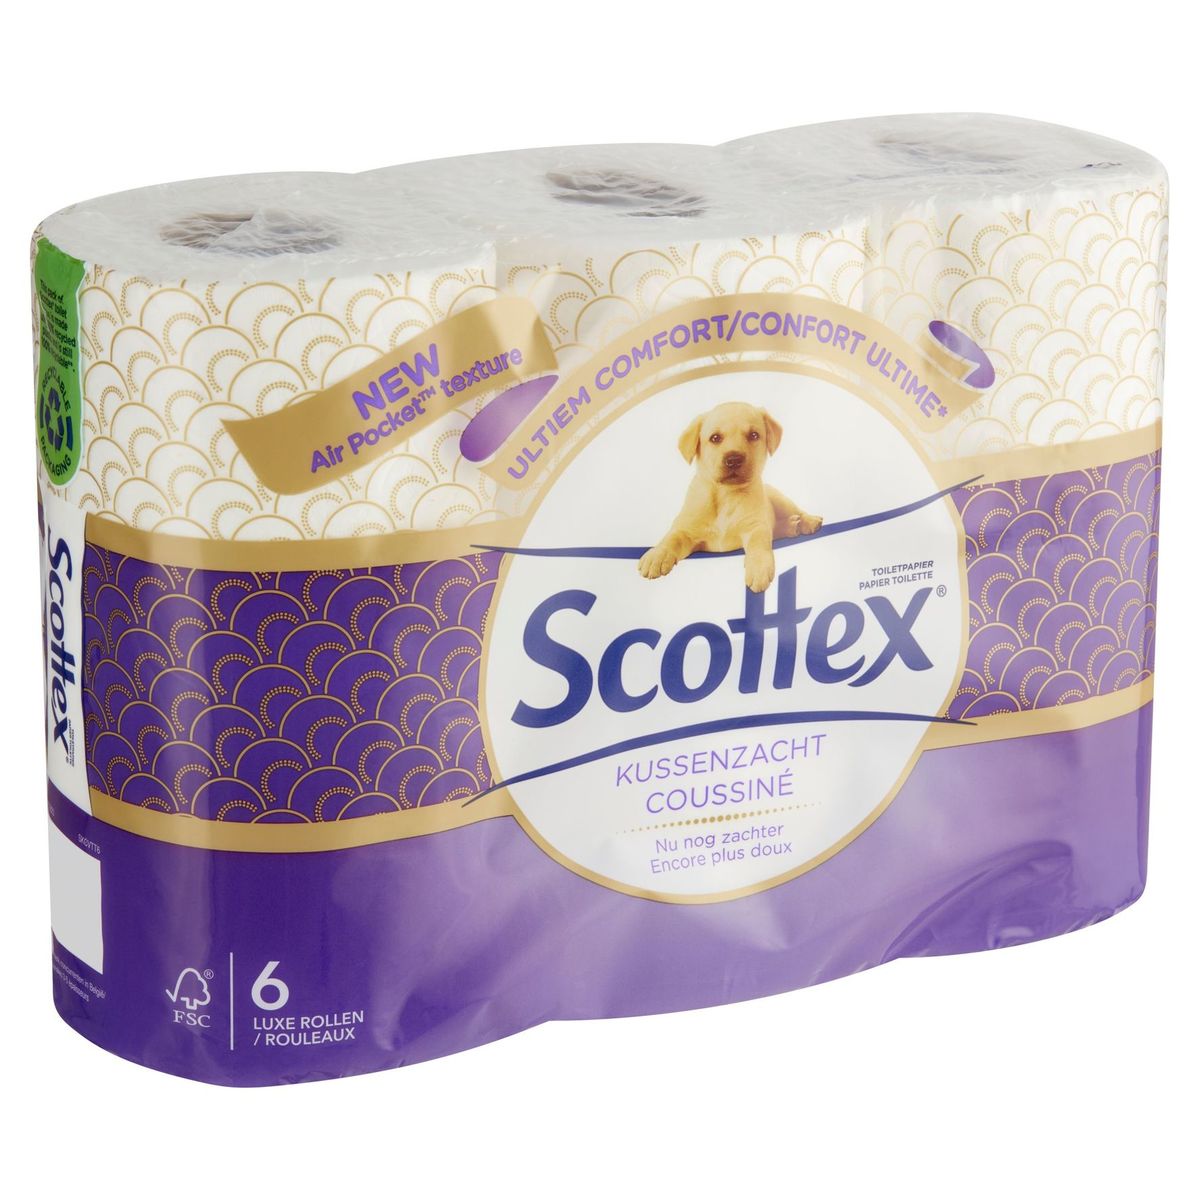 Scottex Toiletpapier Kussenzacht 6 Luxe Rollen